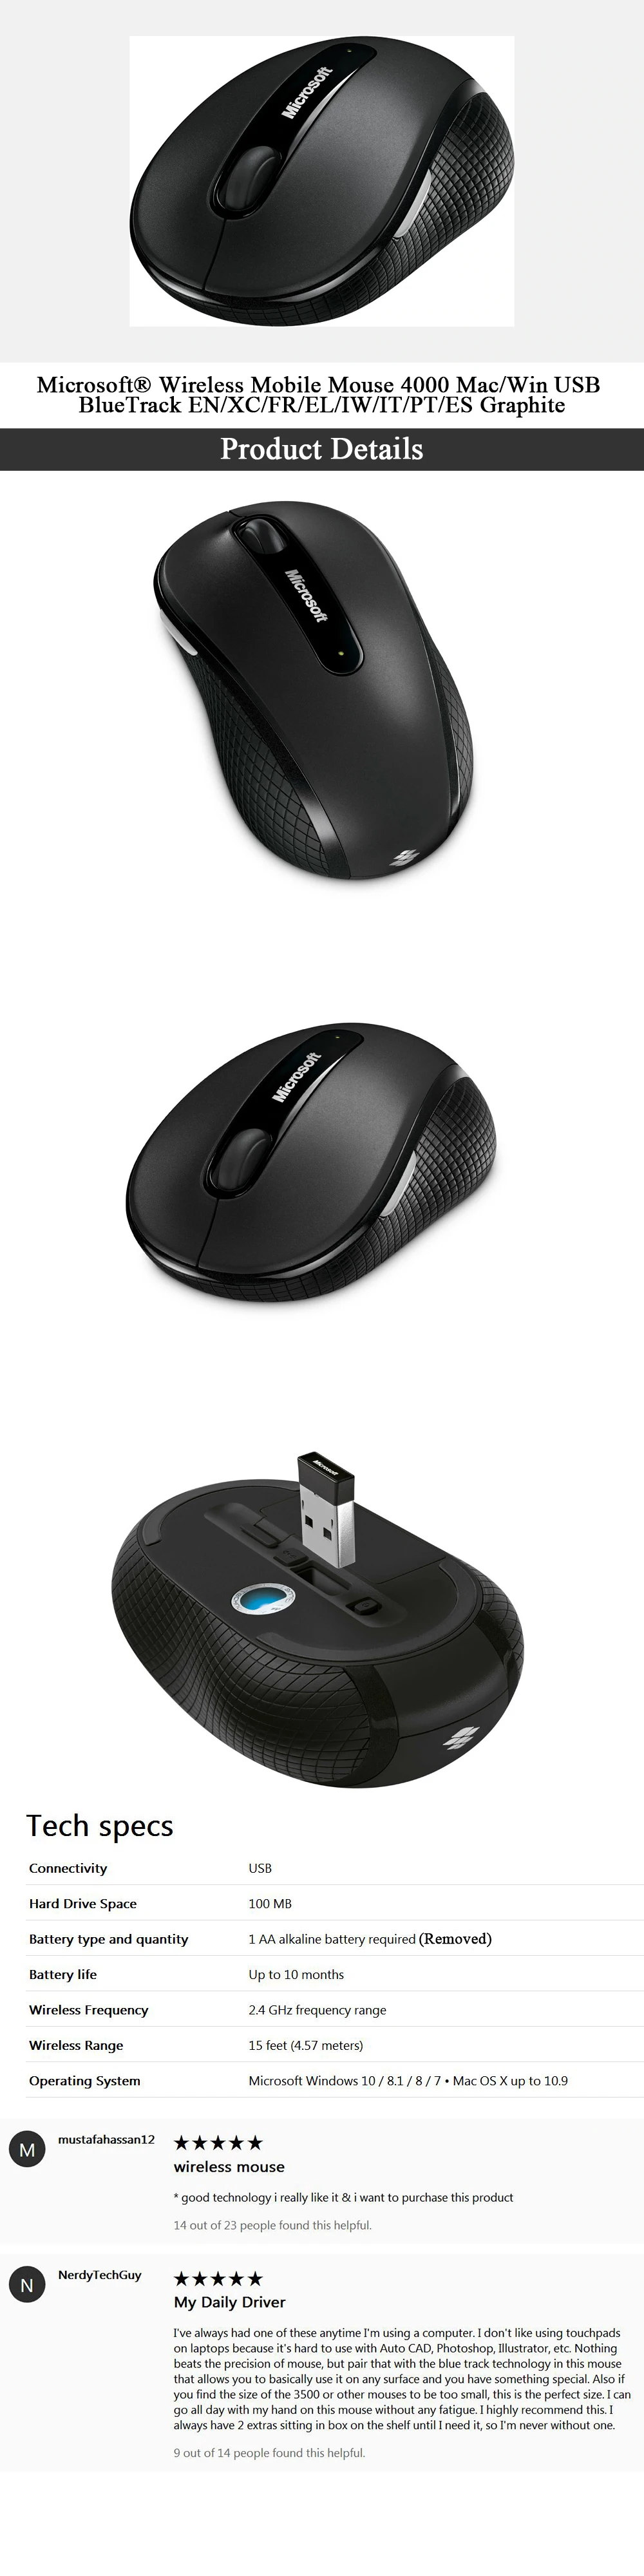 Беспроводная игровая мышь microsoft BlueTrack 4000, мобильная мышь для мыши, геймера, ПК, Mac/Win, USB мышь